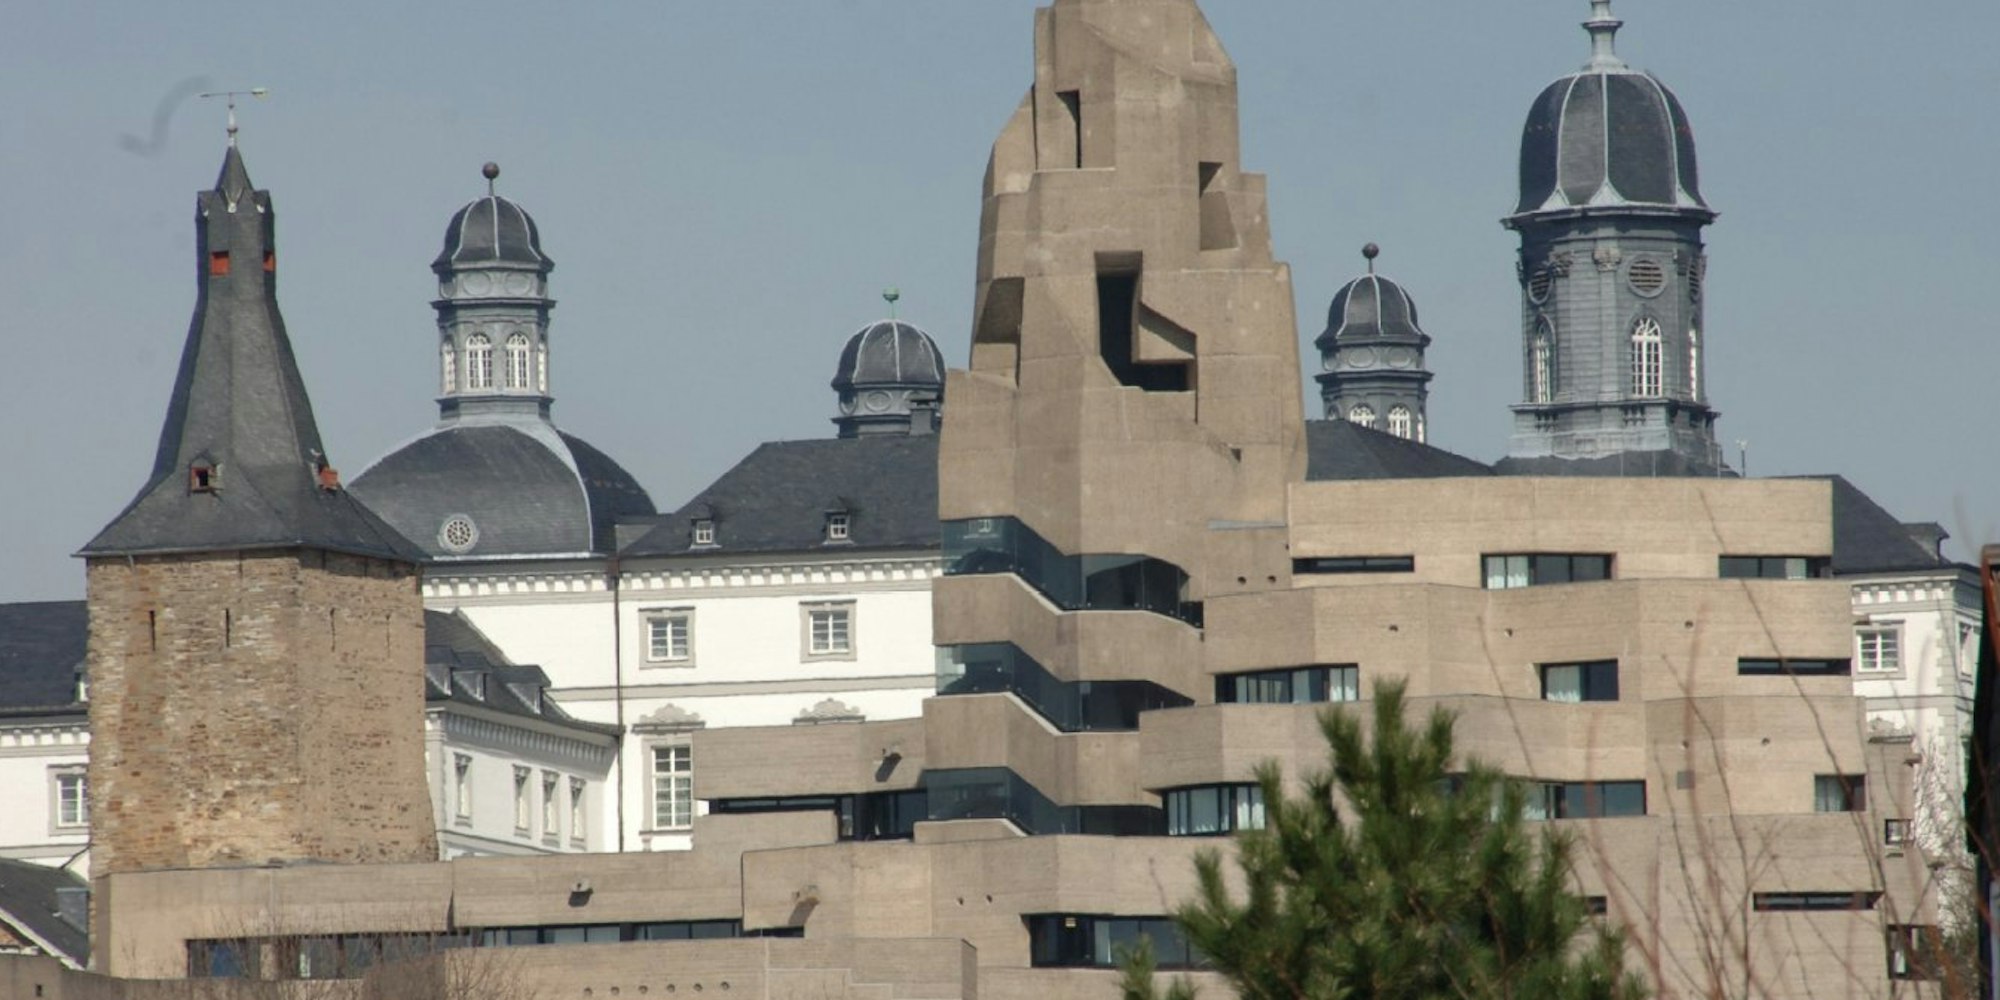 Das Bensberger Rathaus wurde von Böhm Mitte der 1960er Jahre geplant und gebaut.